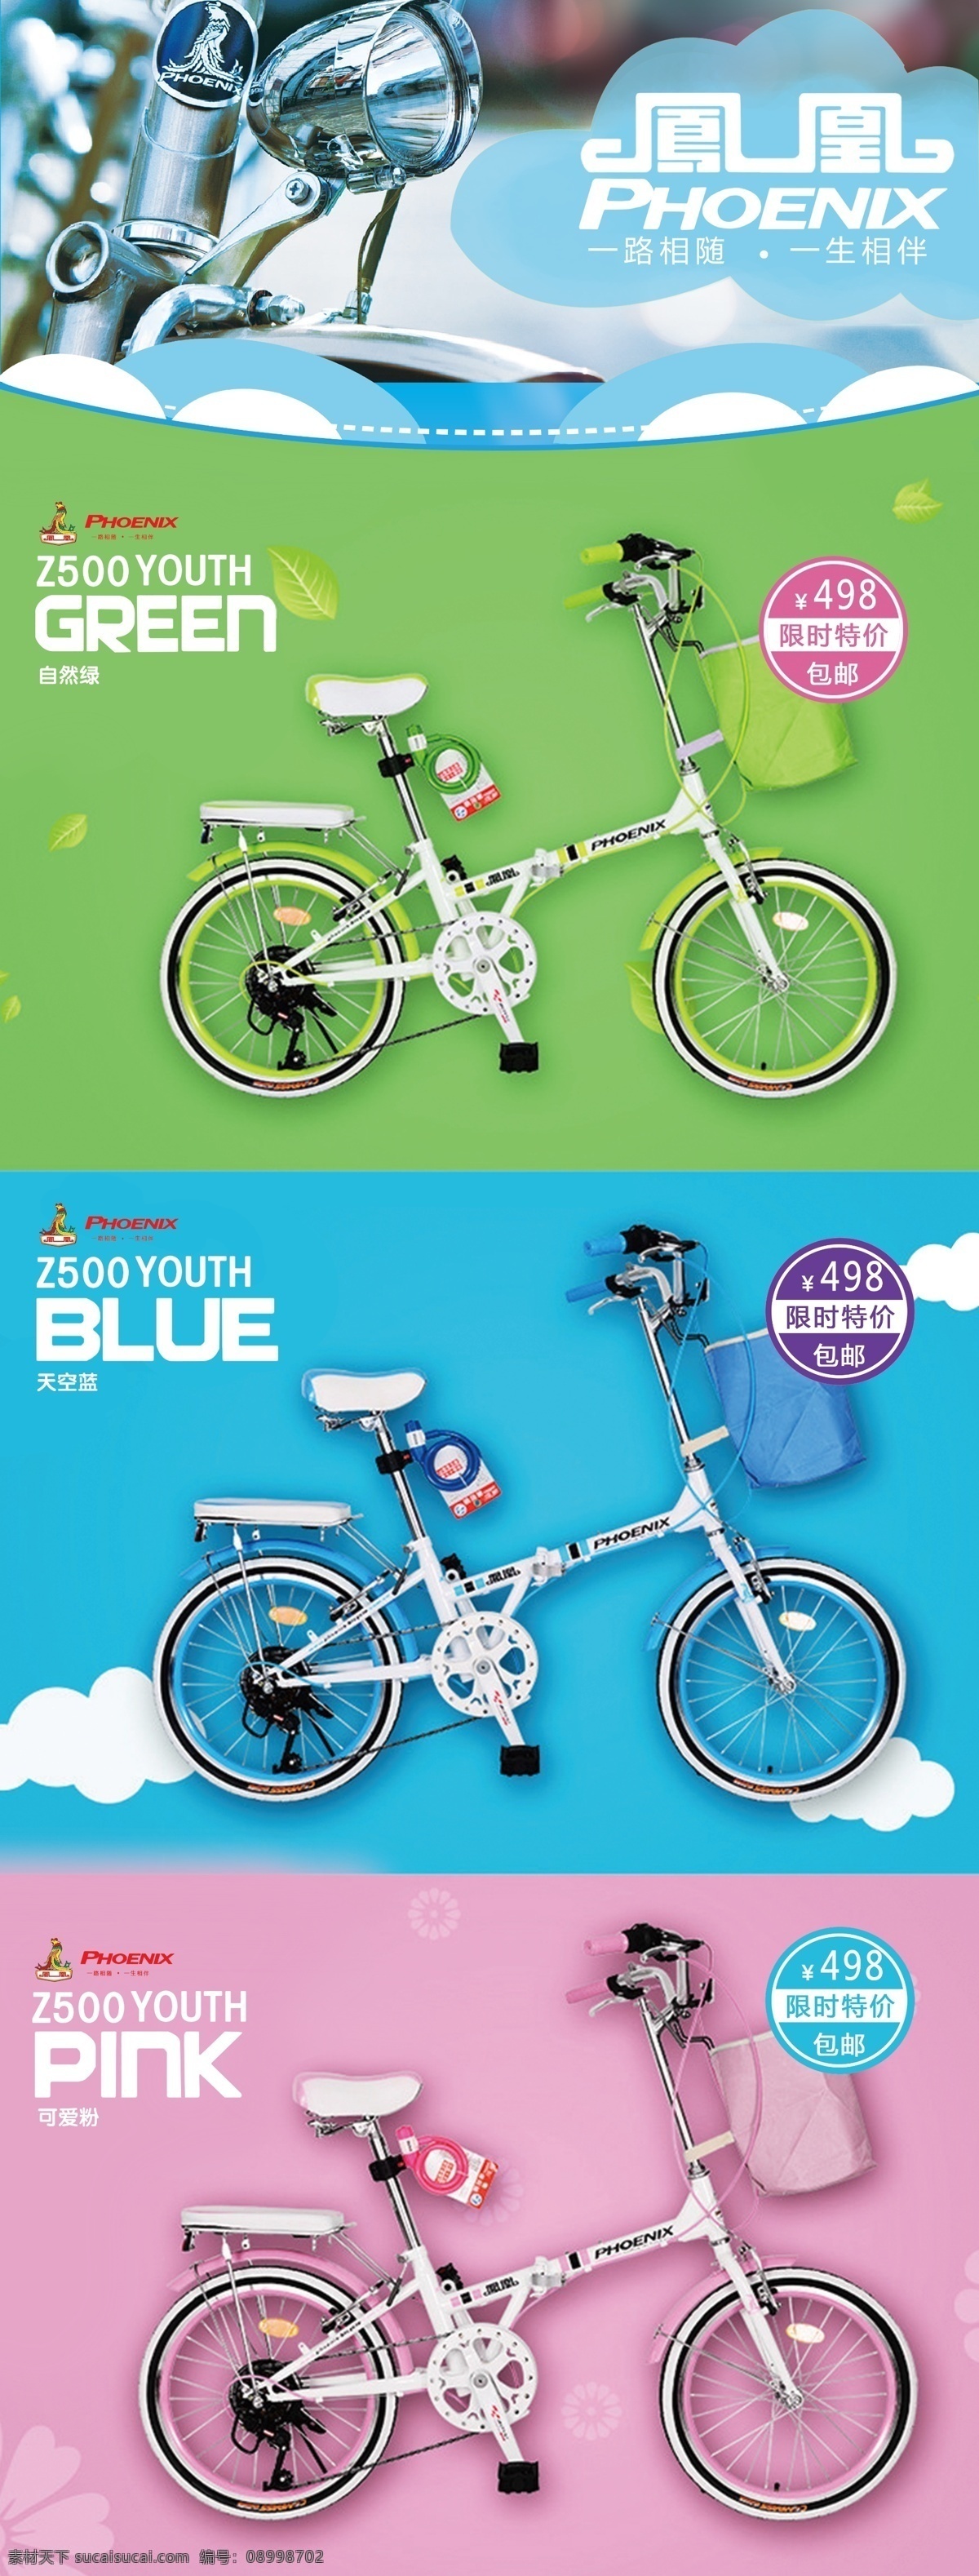 绿色 蓝色 红色 自行车展架 包邮 超低价 青色 天蓝色